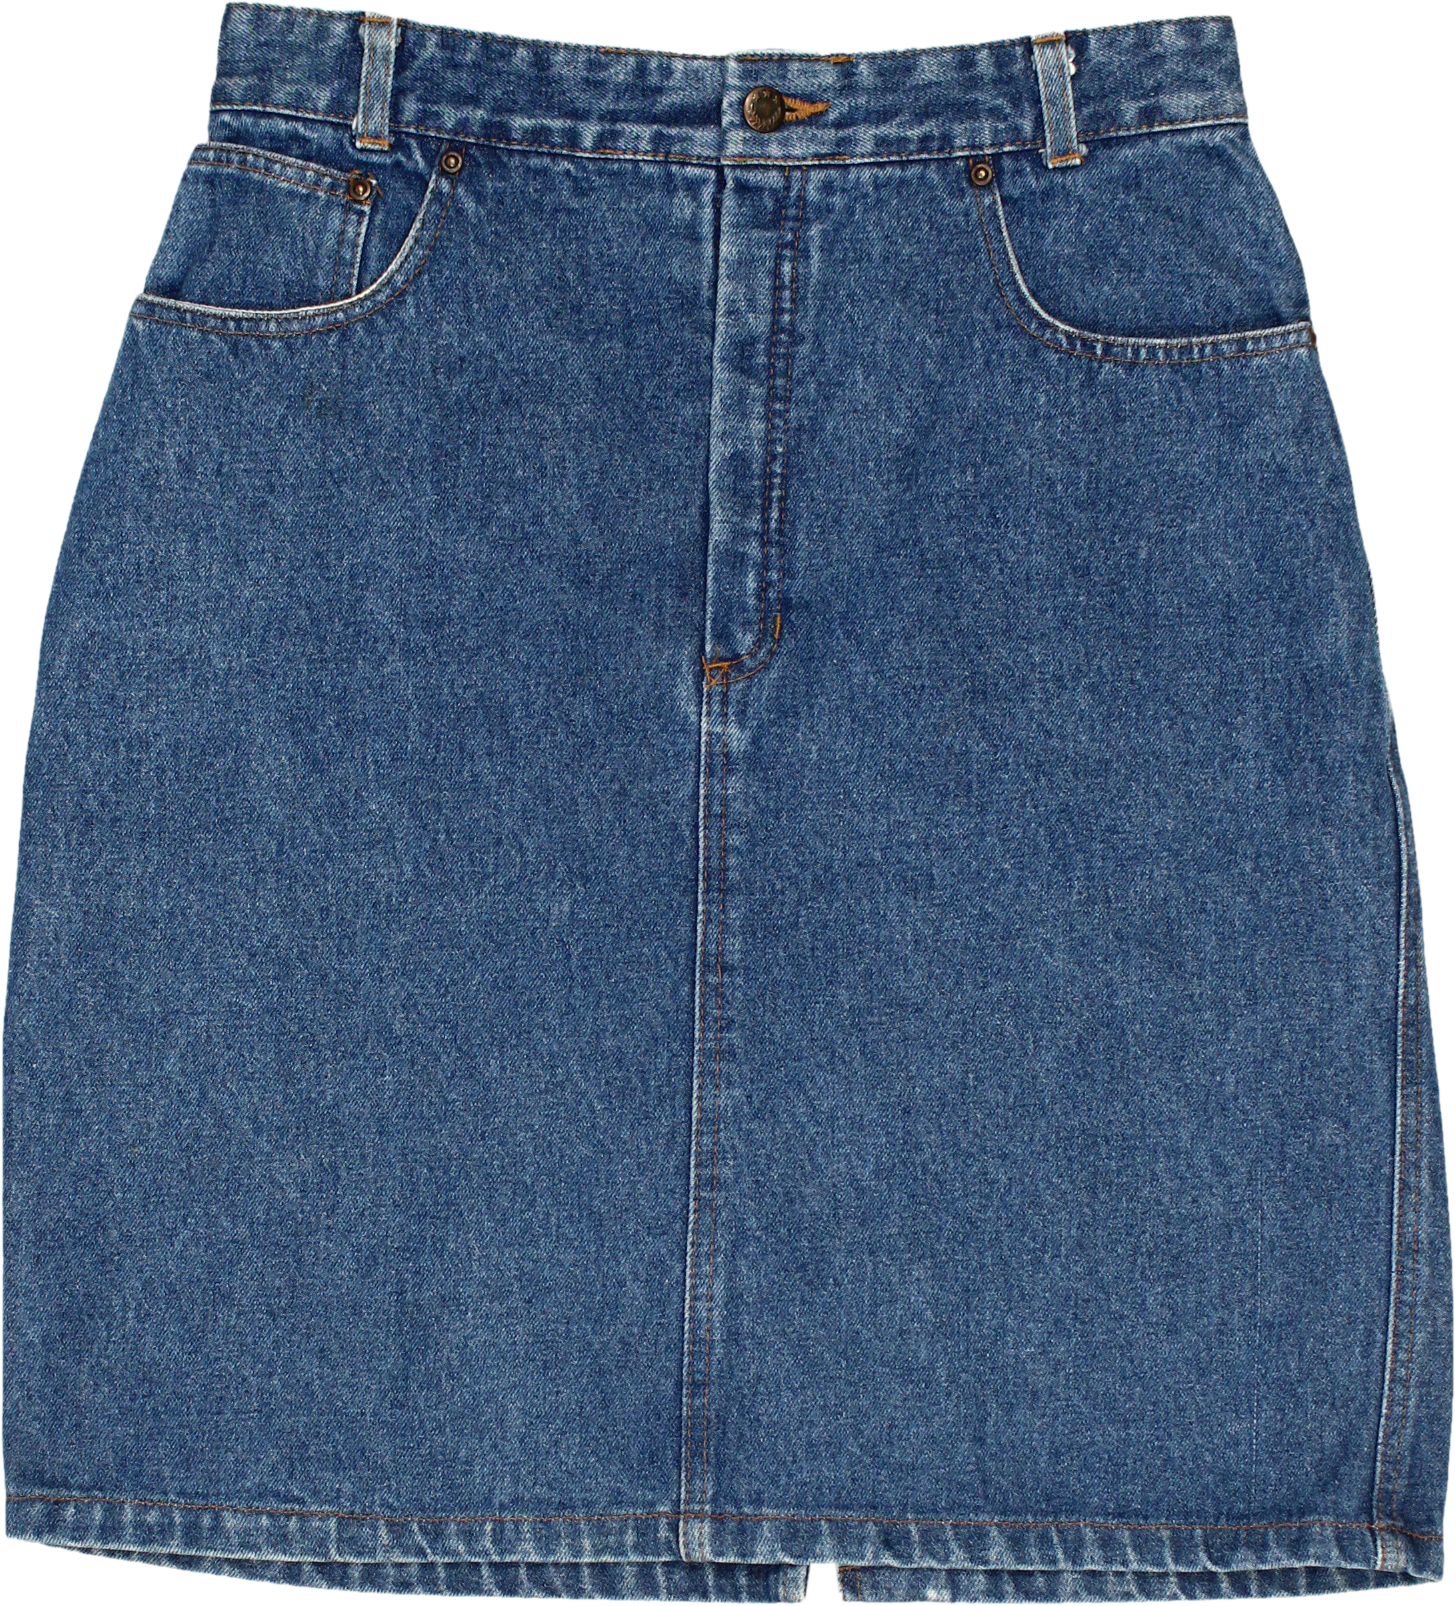 Hi Fever - 00s Denim Skirt- ThriftTale.com - Vintage and second handclothing